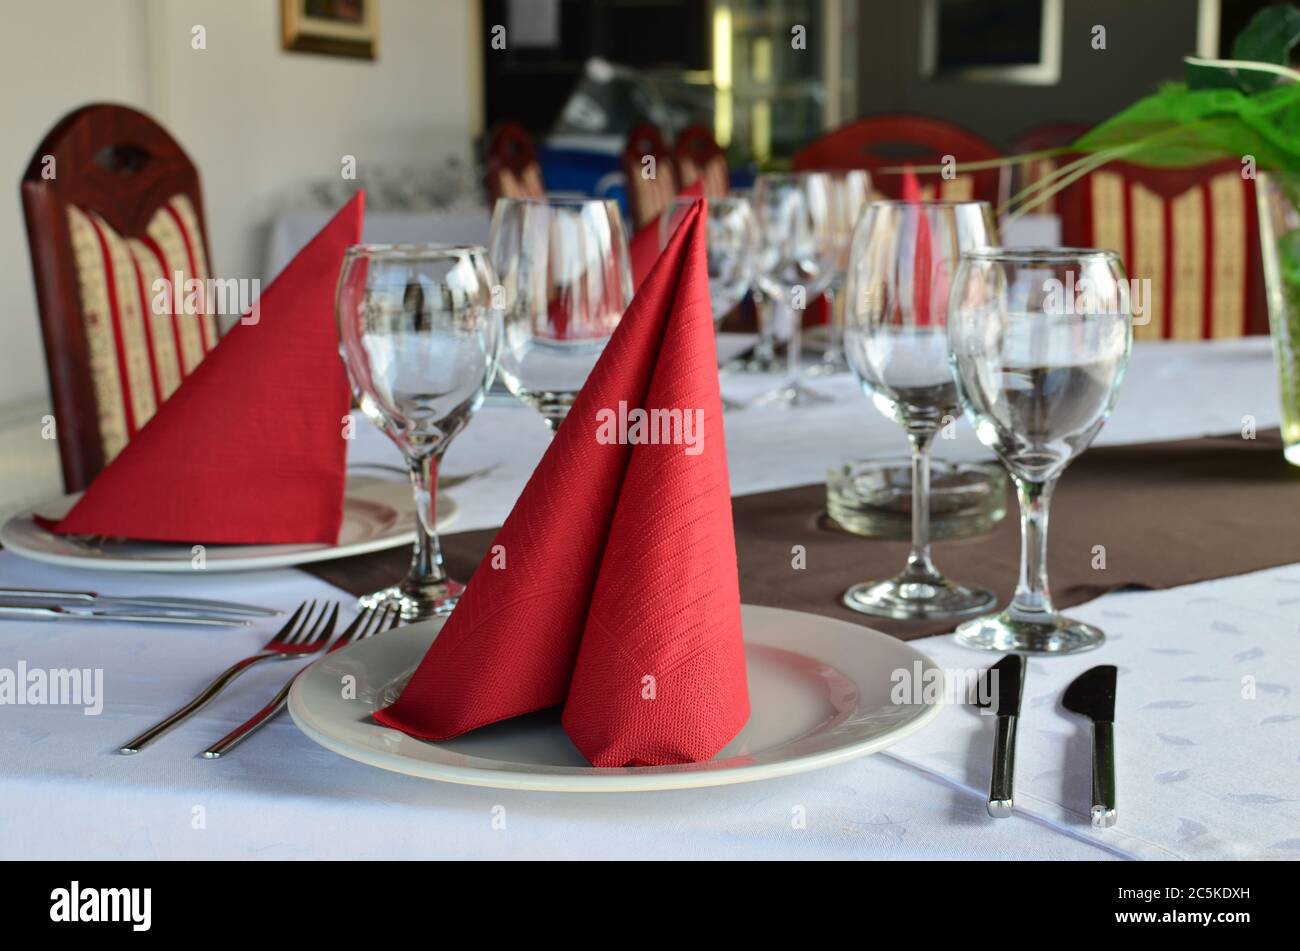 Restauranttisch gelegt und dekoriert, leere Gläser, Teller, Gabeln und Messer, rote Servietten und weiße Tischtücher Stockfoto